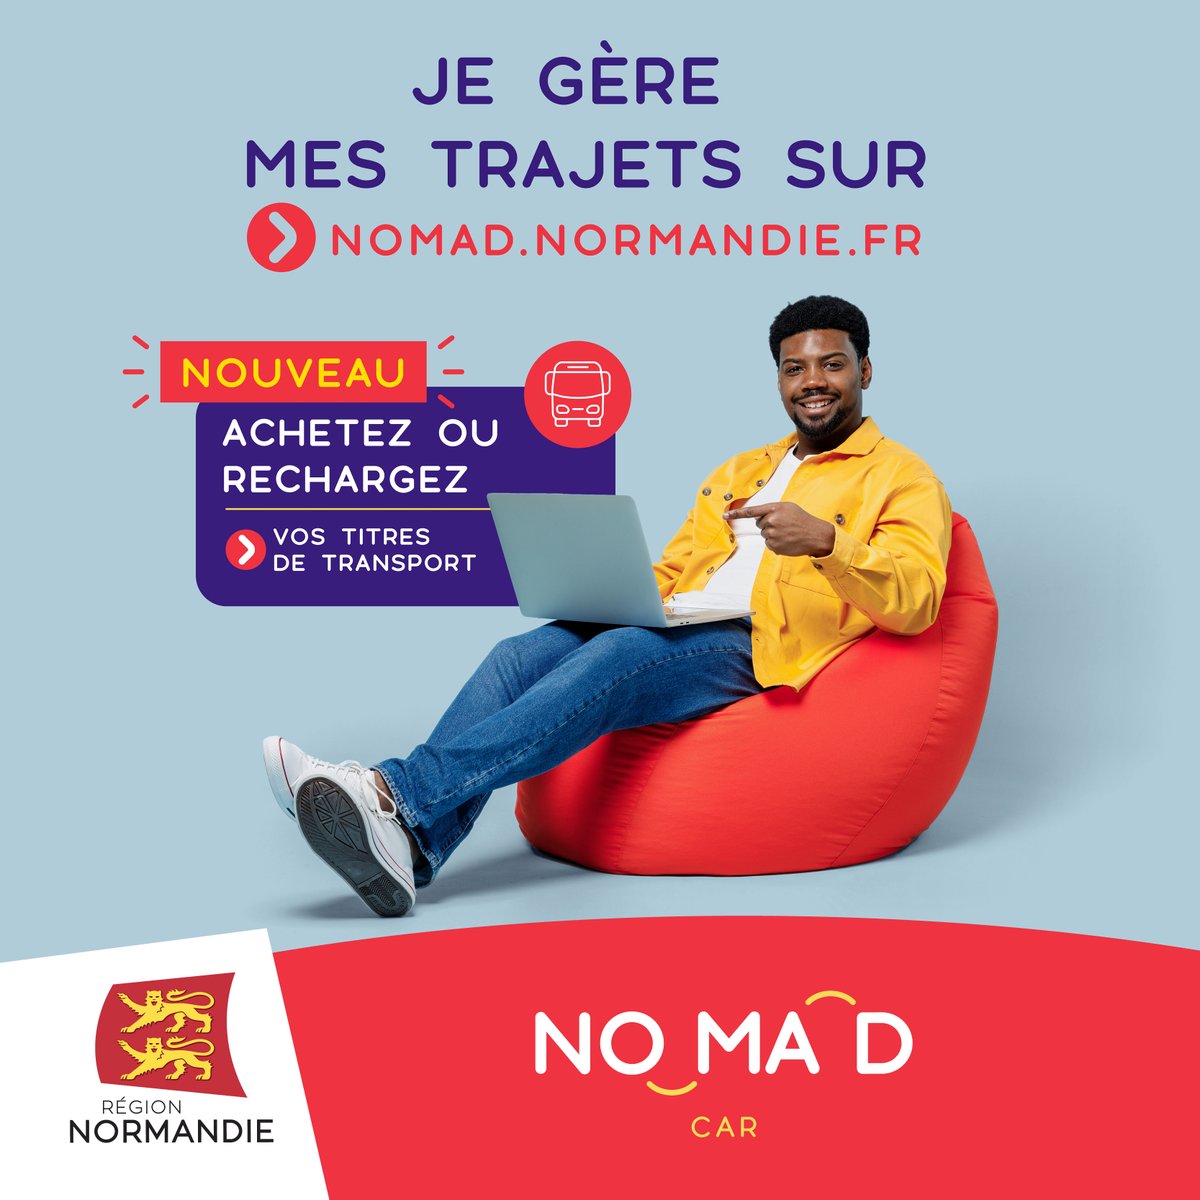 🆕Nouveauté sur le site nomad.normandie.fr ! Vous pouvez désormais acheter, recharger et payer en ligne votre abonnement commercial (en 1, 4 ou 10 fois selon ) ou commander un duplicata de votre abonnement commercial. ➡️kky.fr/4xc0ome